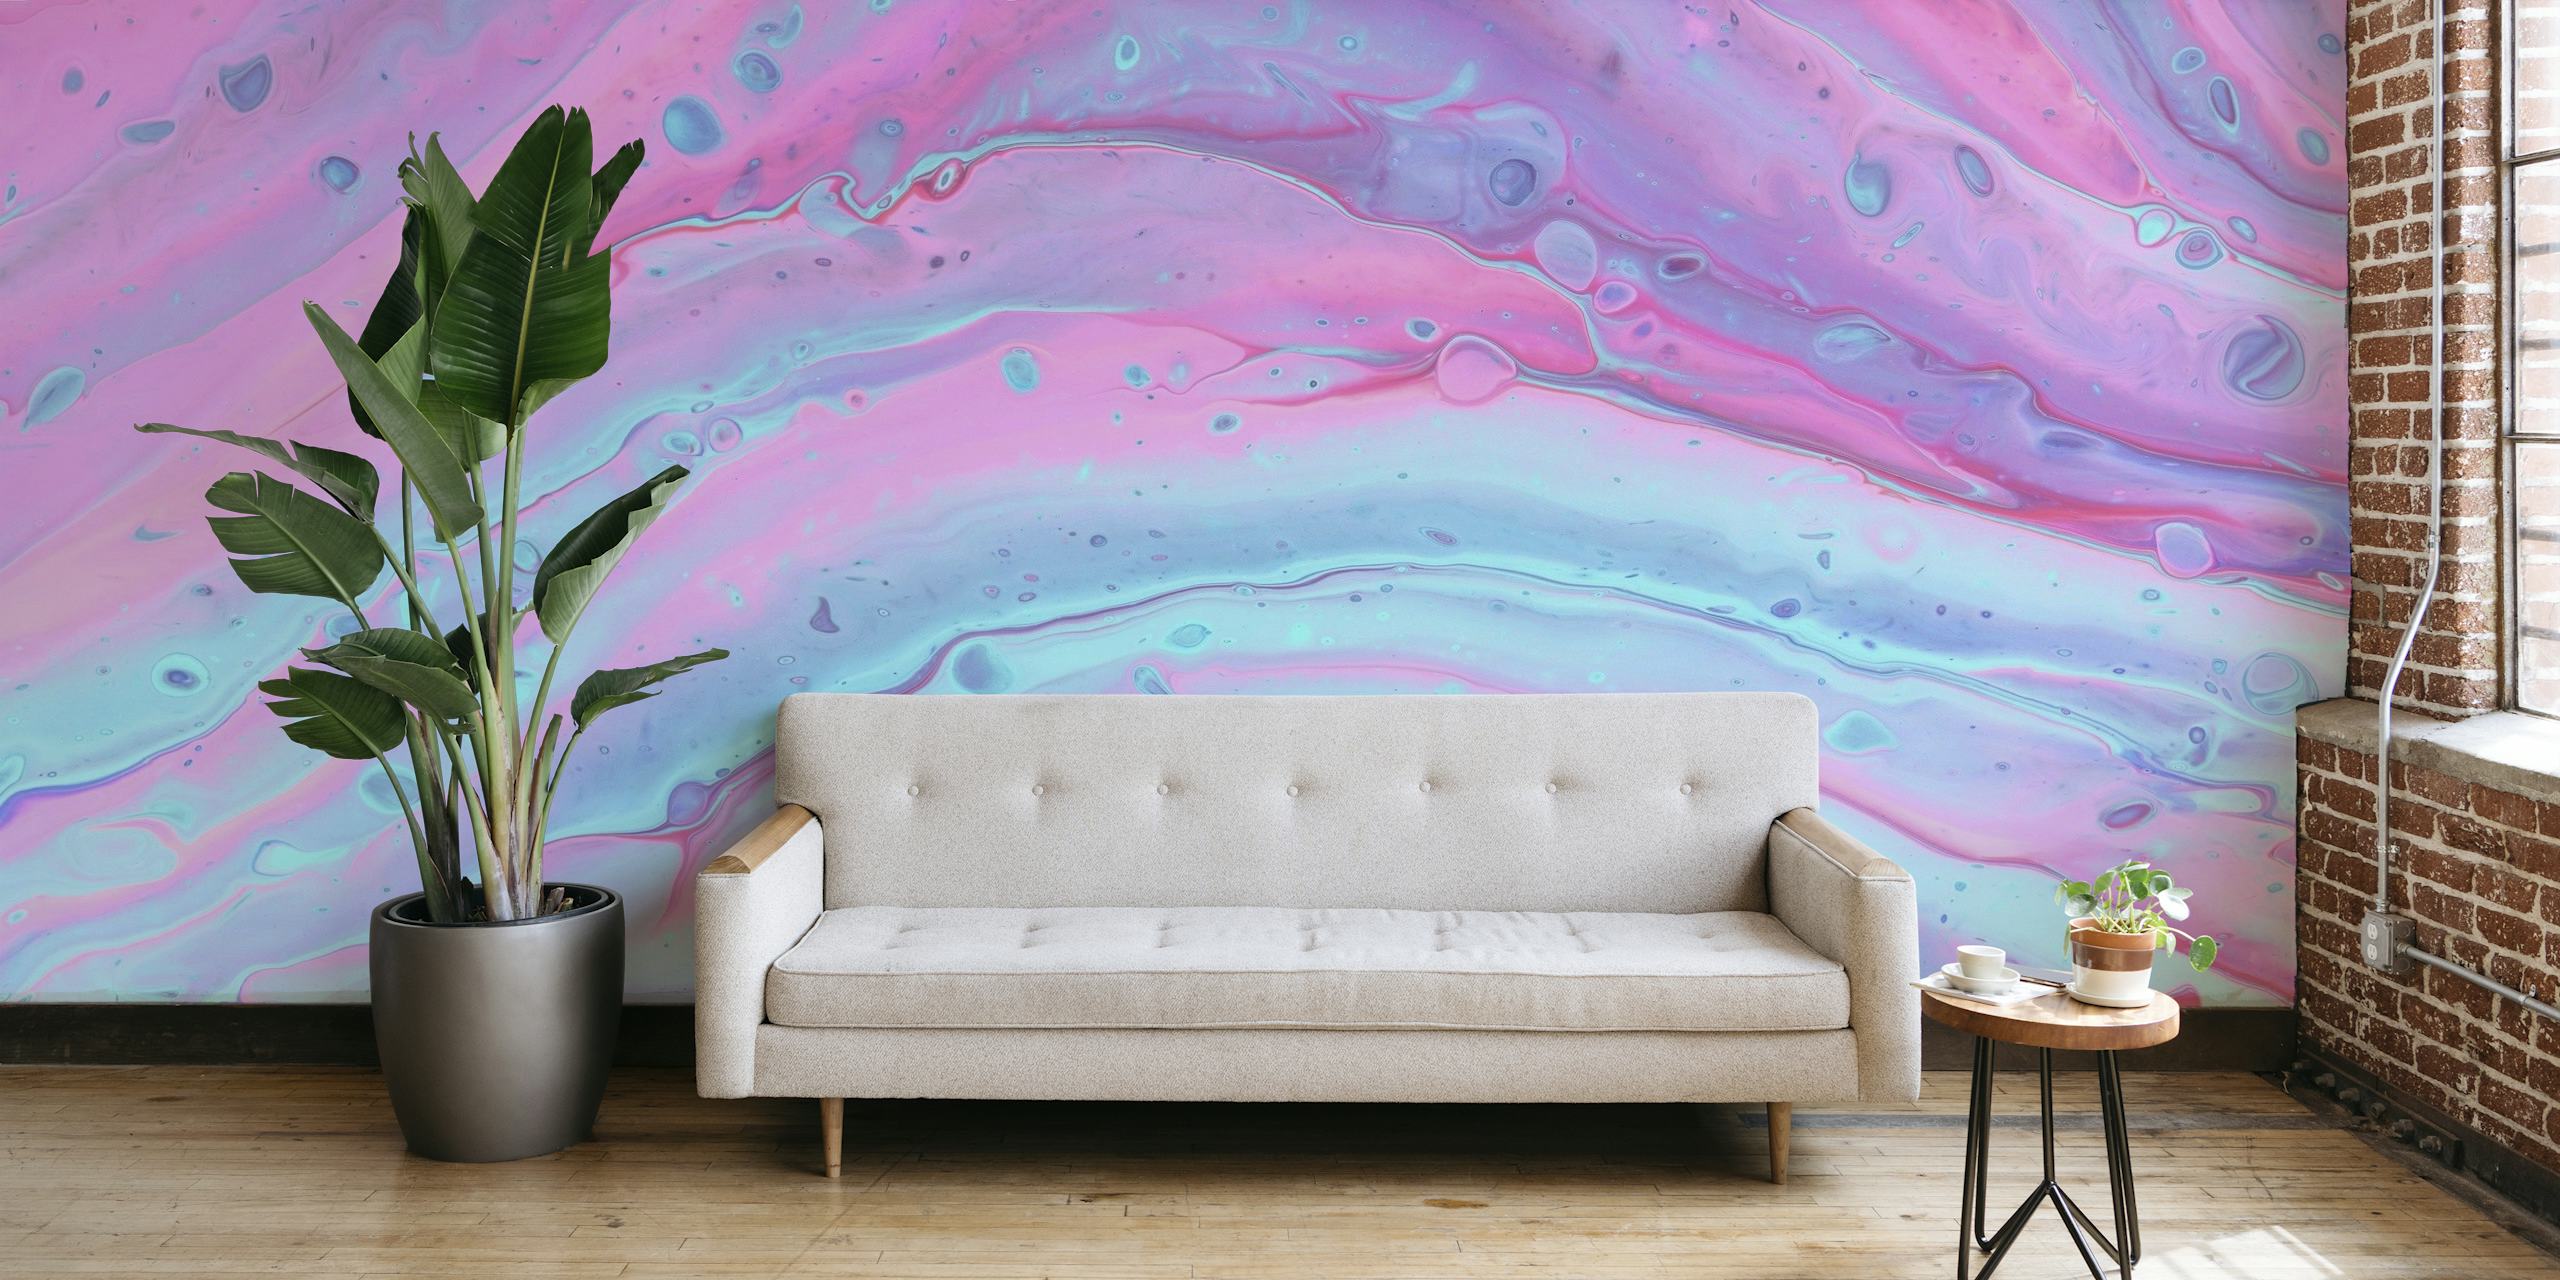 Vibrant liquid marble behang